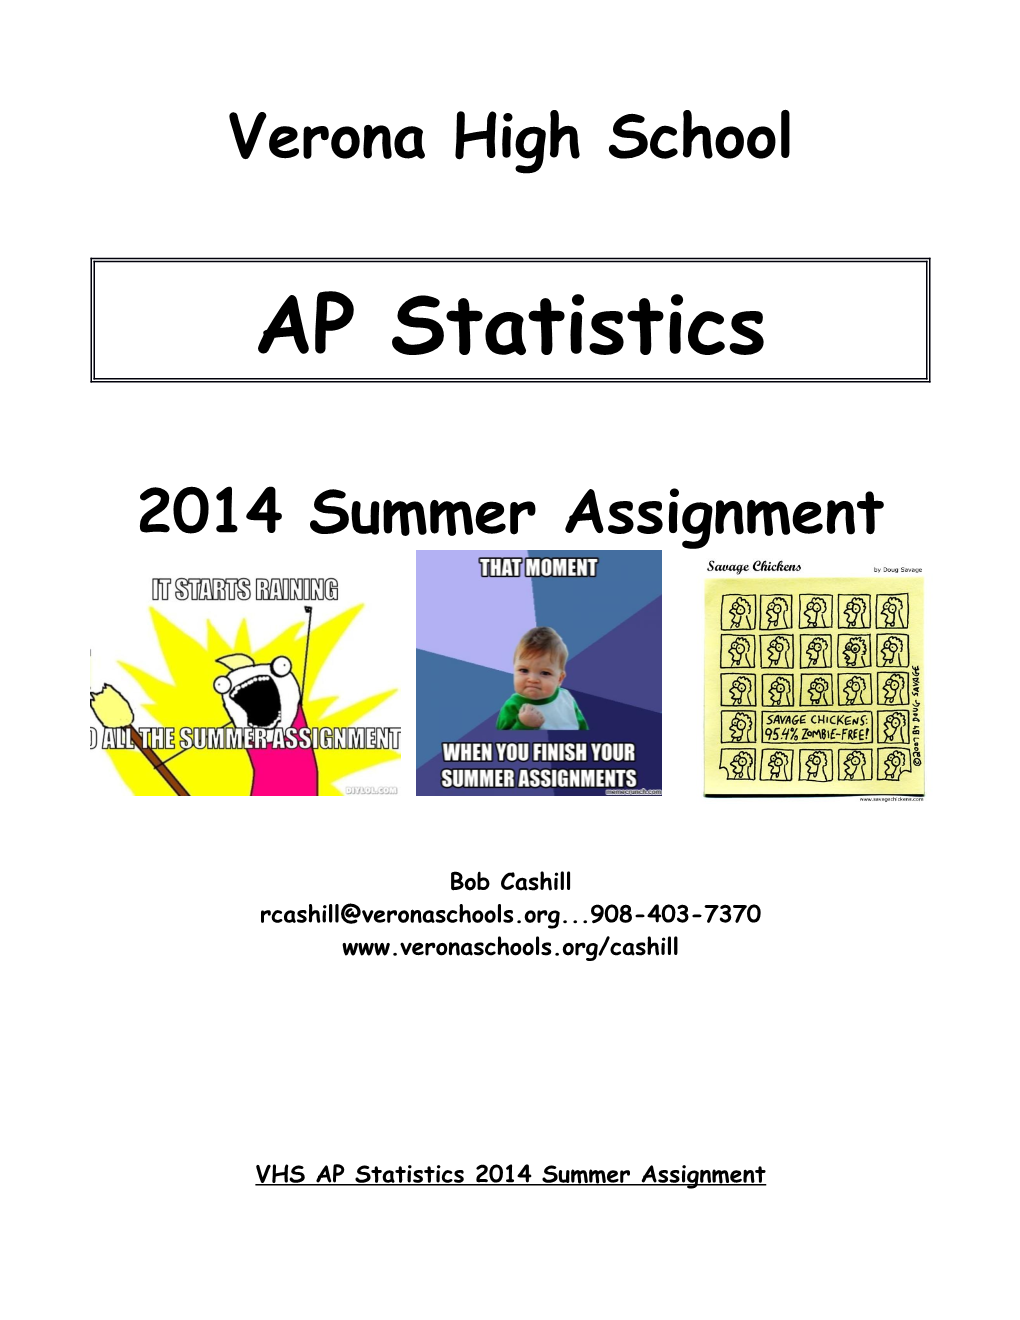 VHS AP Statistics 2014 Summer Assignment